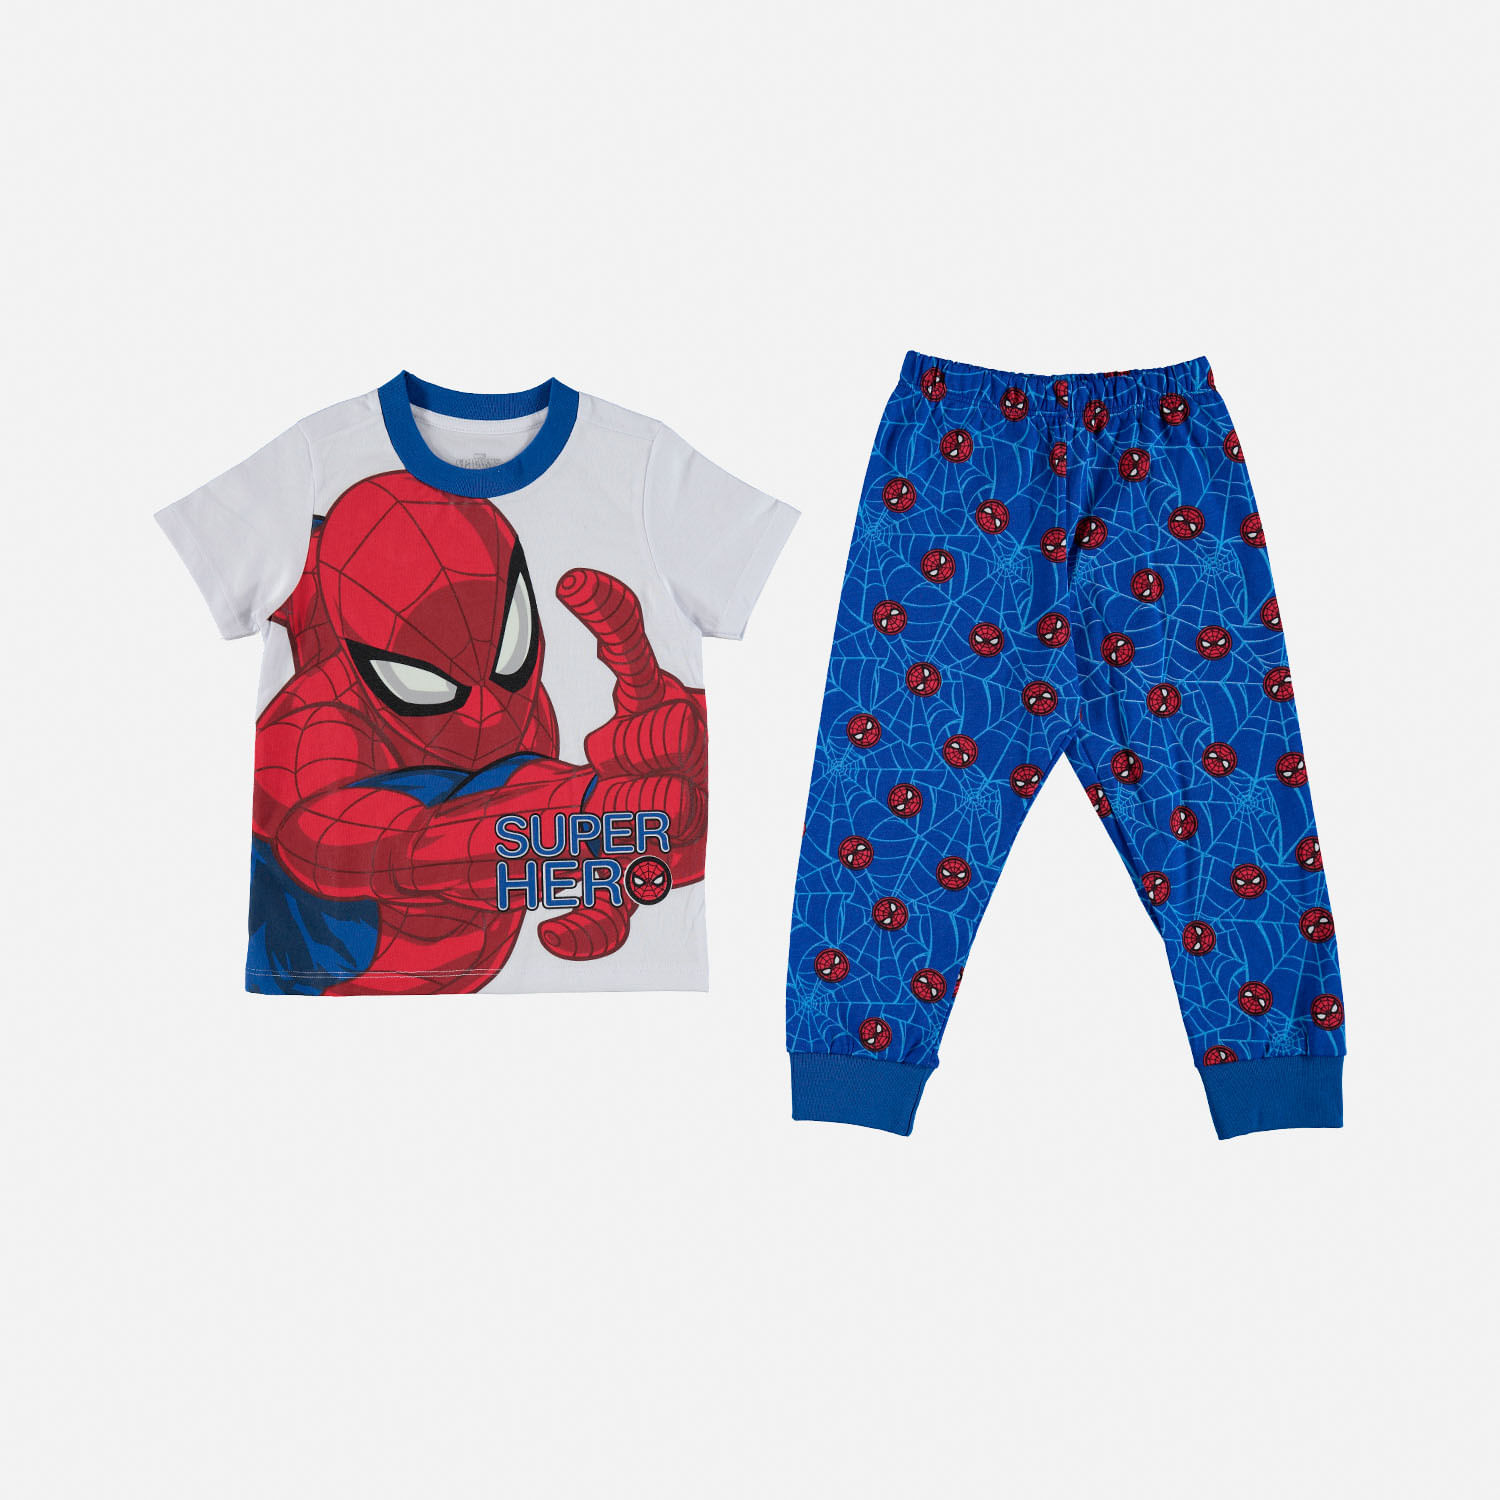 Pijama Spiderman para niño